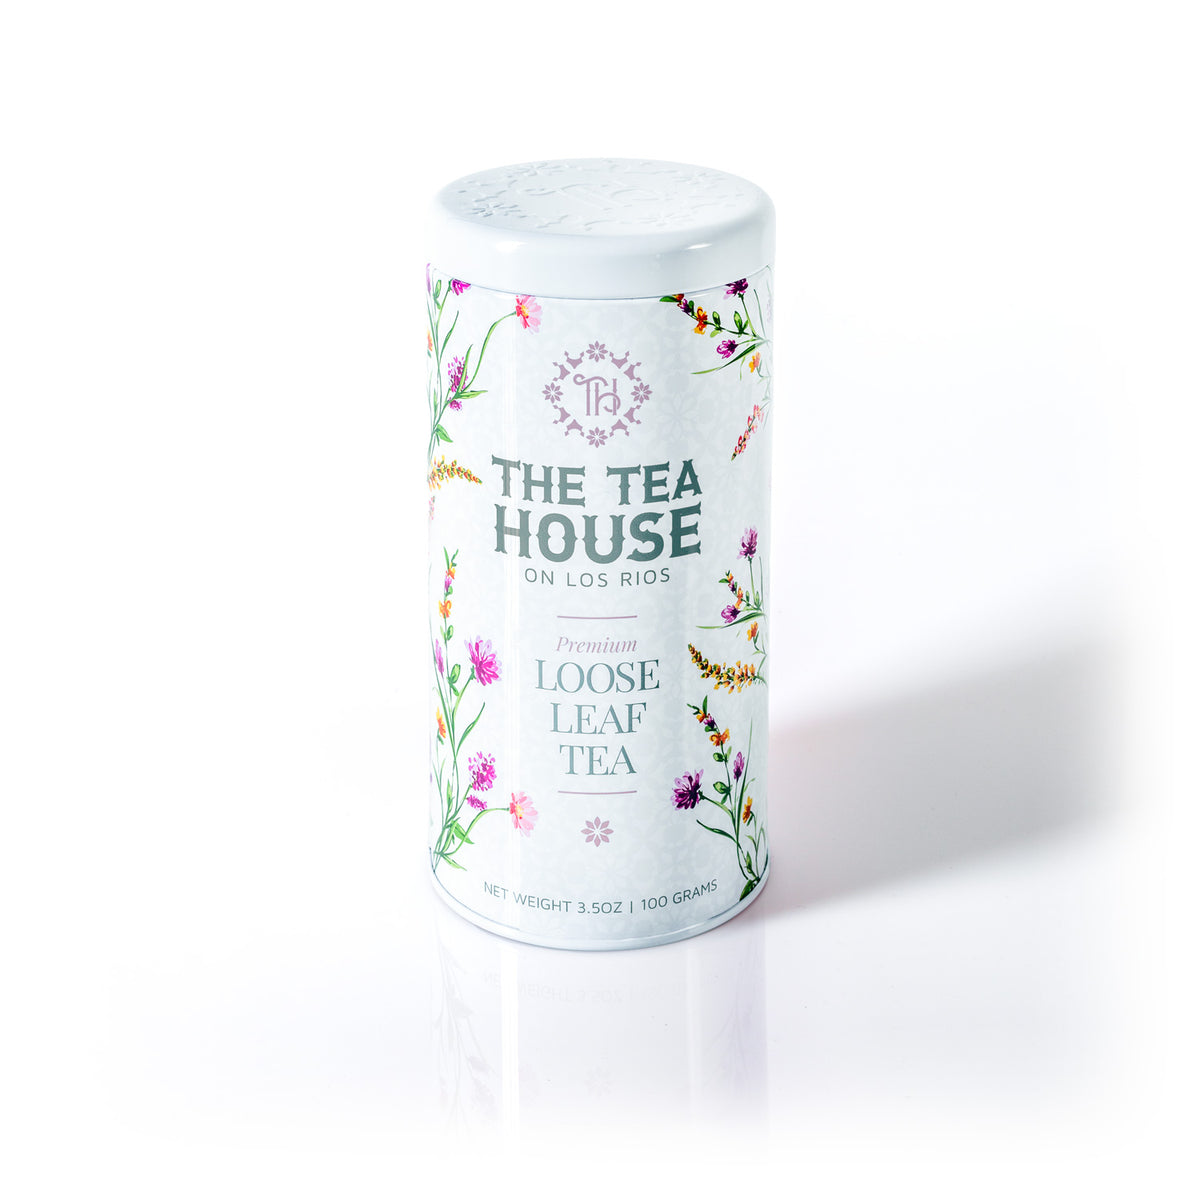 100g Loose Leaf Tea Tin - The Tea House on Los Rios Edition